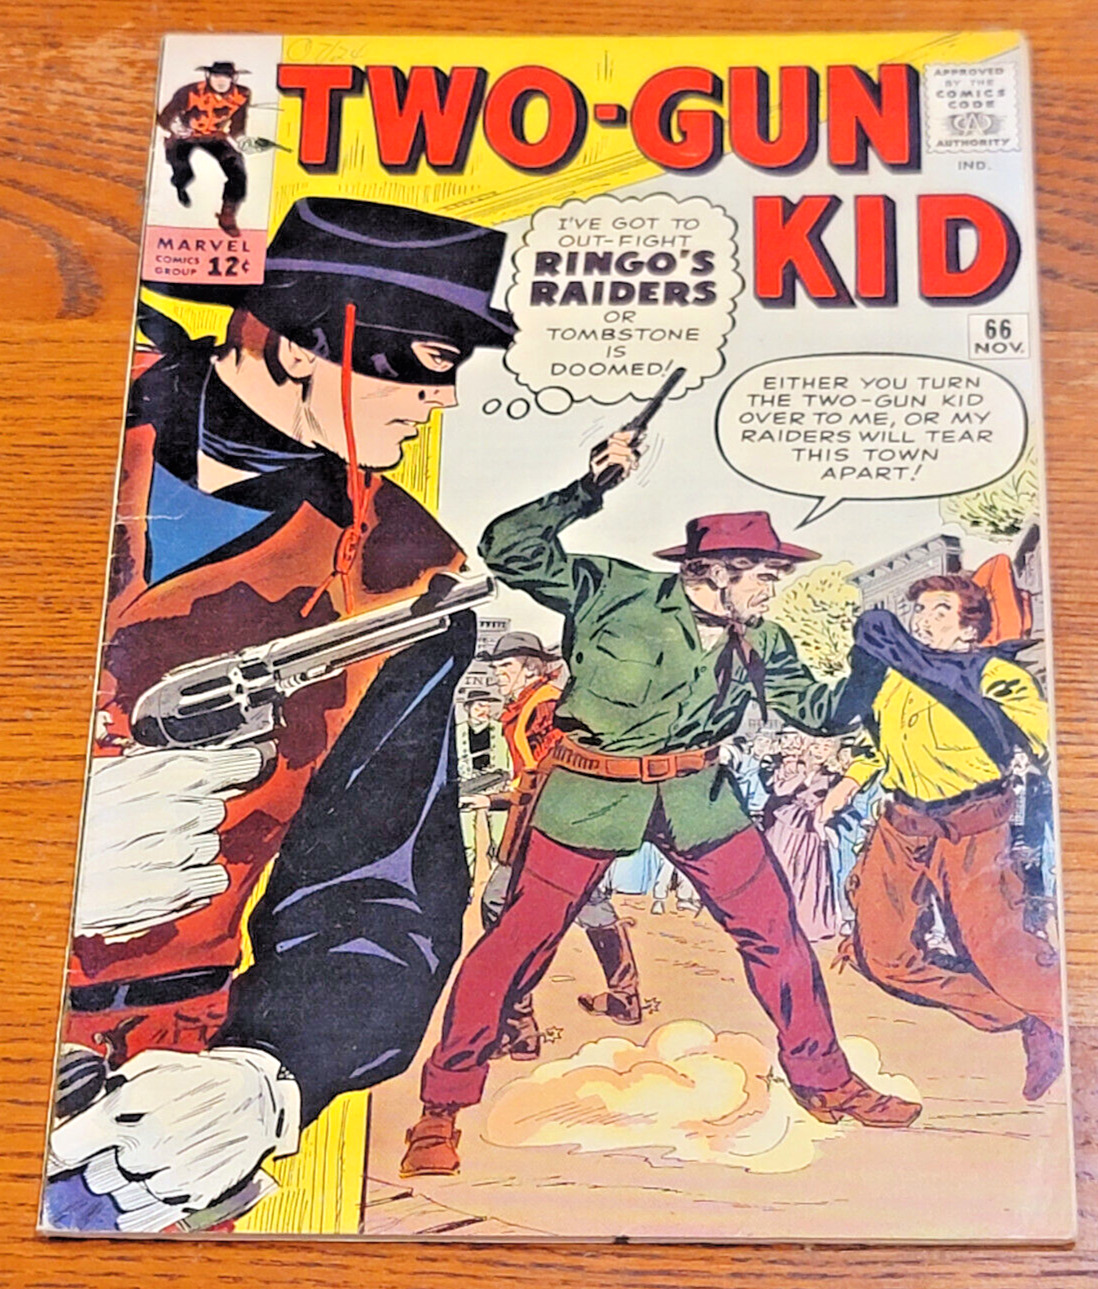 TWO-GUN KID #66 (Marvel:1963) Jack Kirby Stan Lee VG/FN (5.0)